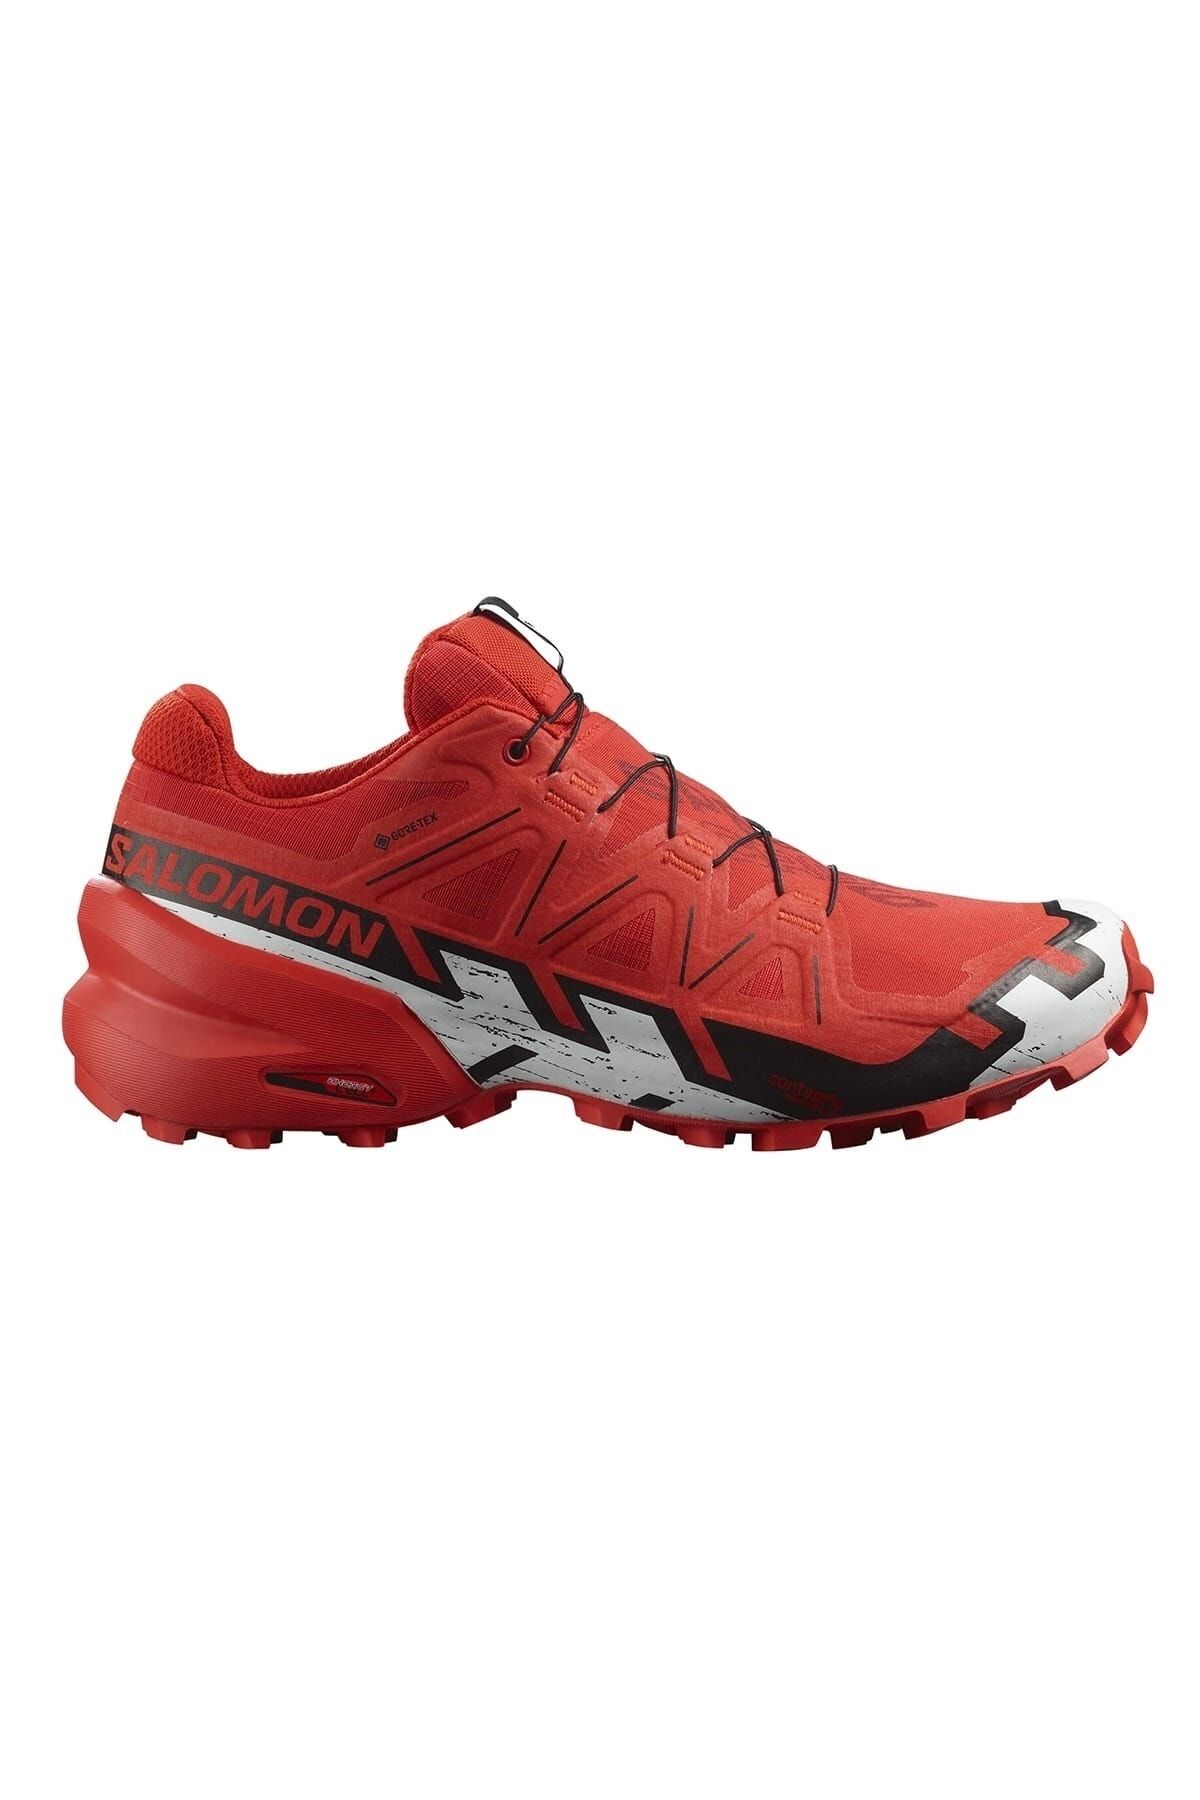 Salomon Speedcross 6 Gtx Erkek Patika Koşu Ayakkabısı L41739000